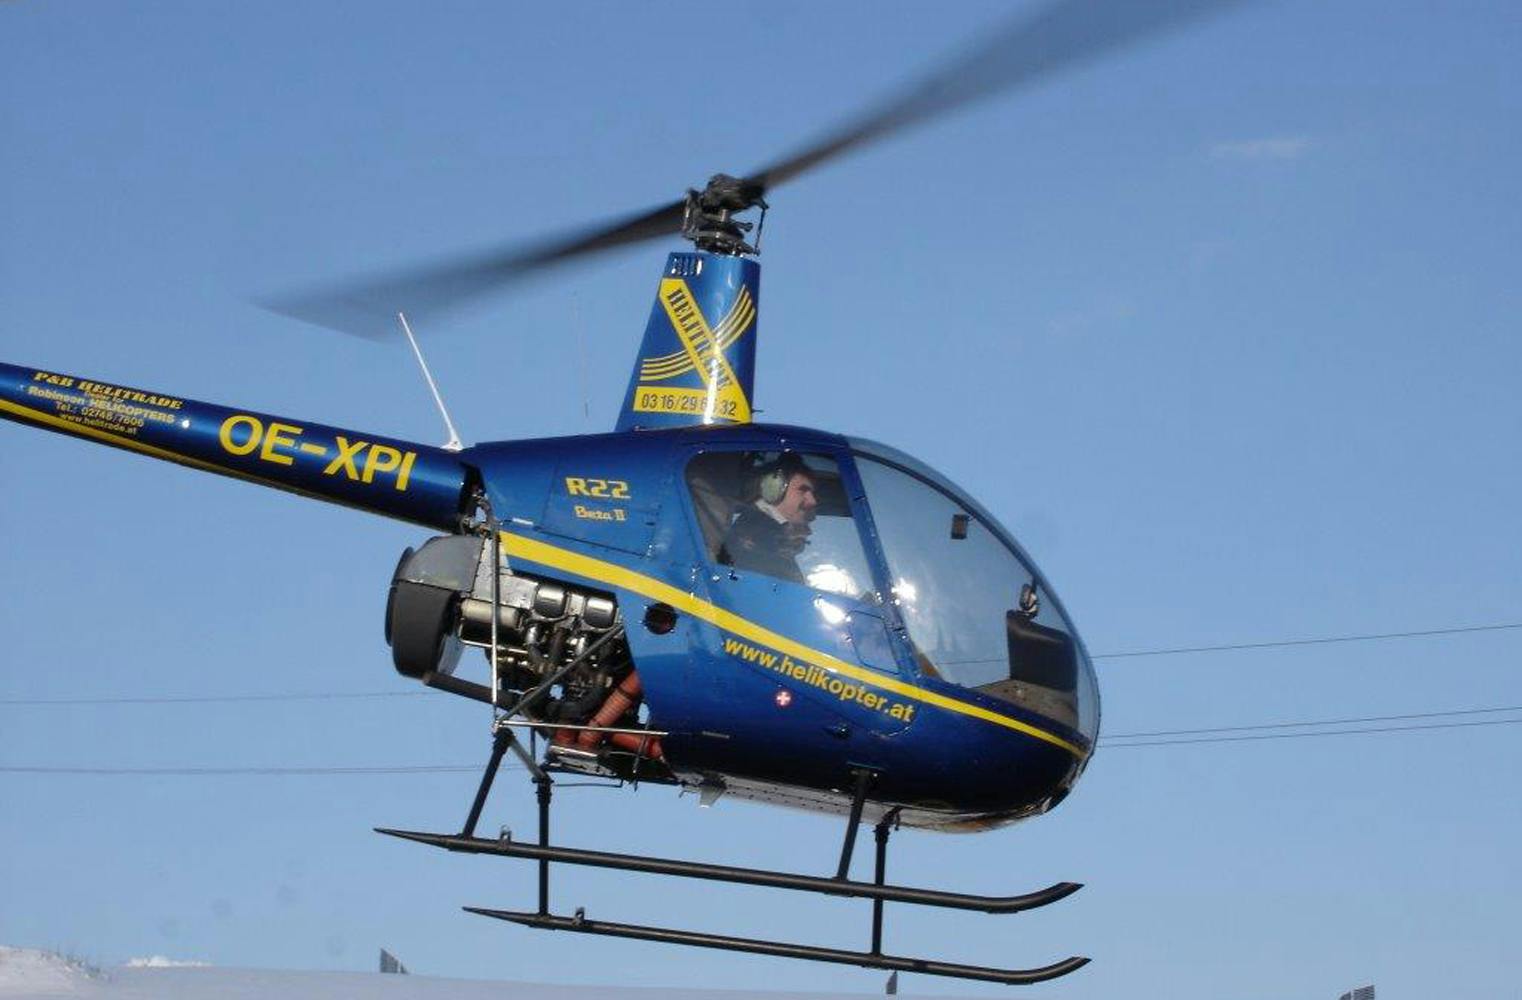 Hubschrauber fliegen | am Steuer des Robinson R22 | 1 Stunde